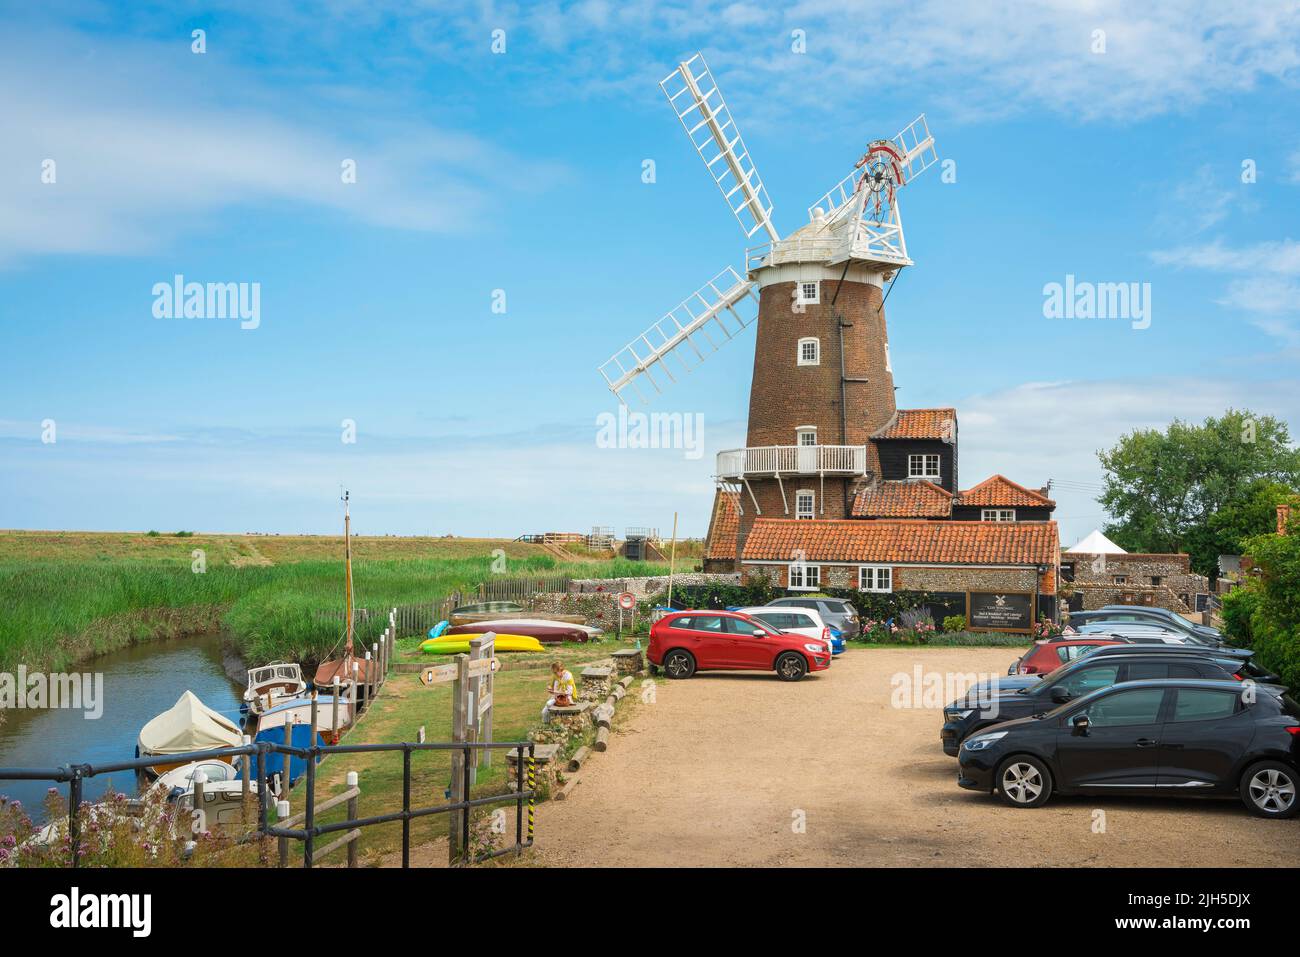 Cley Windmill, vista in estate del pittoresco mulino a vento 18th secolo a Cley accanto al mare, ora una popolare casa per le vacanze, costa nord Norfolk, Regno Unito Foto Stock